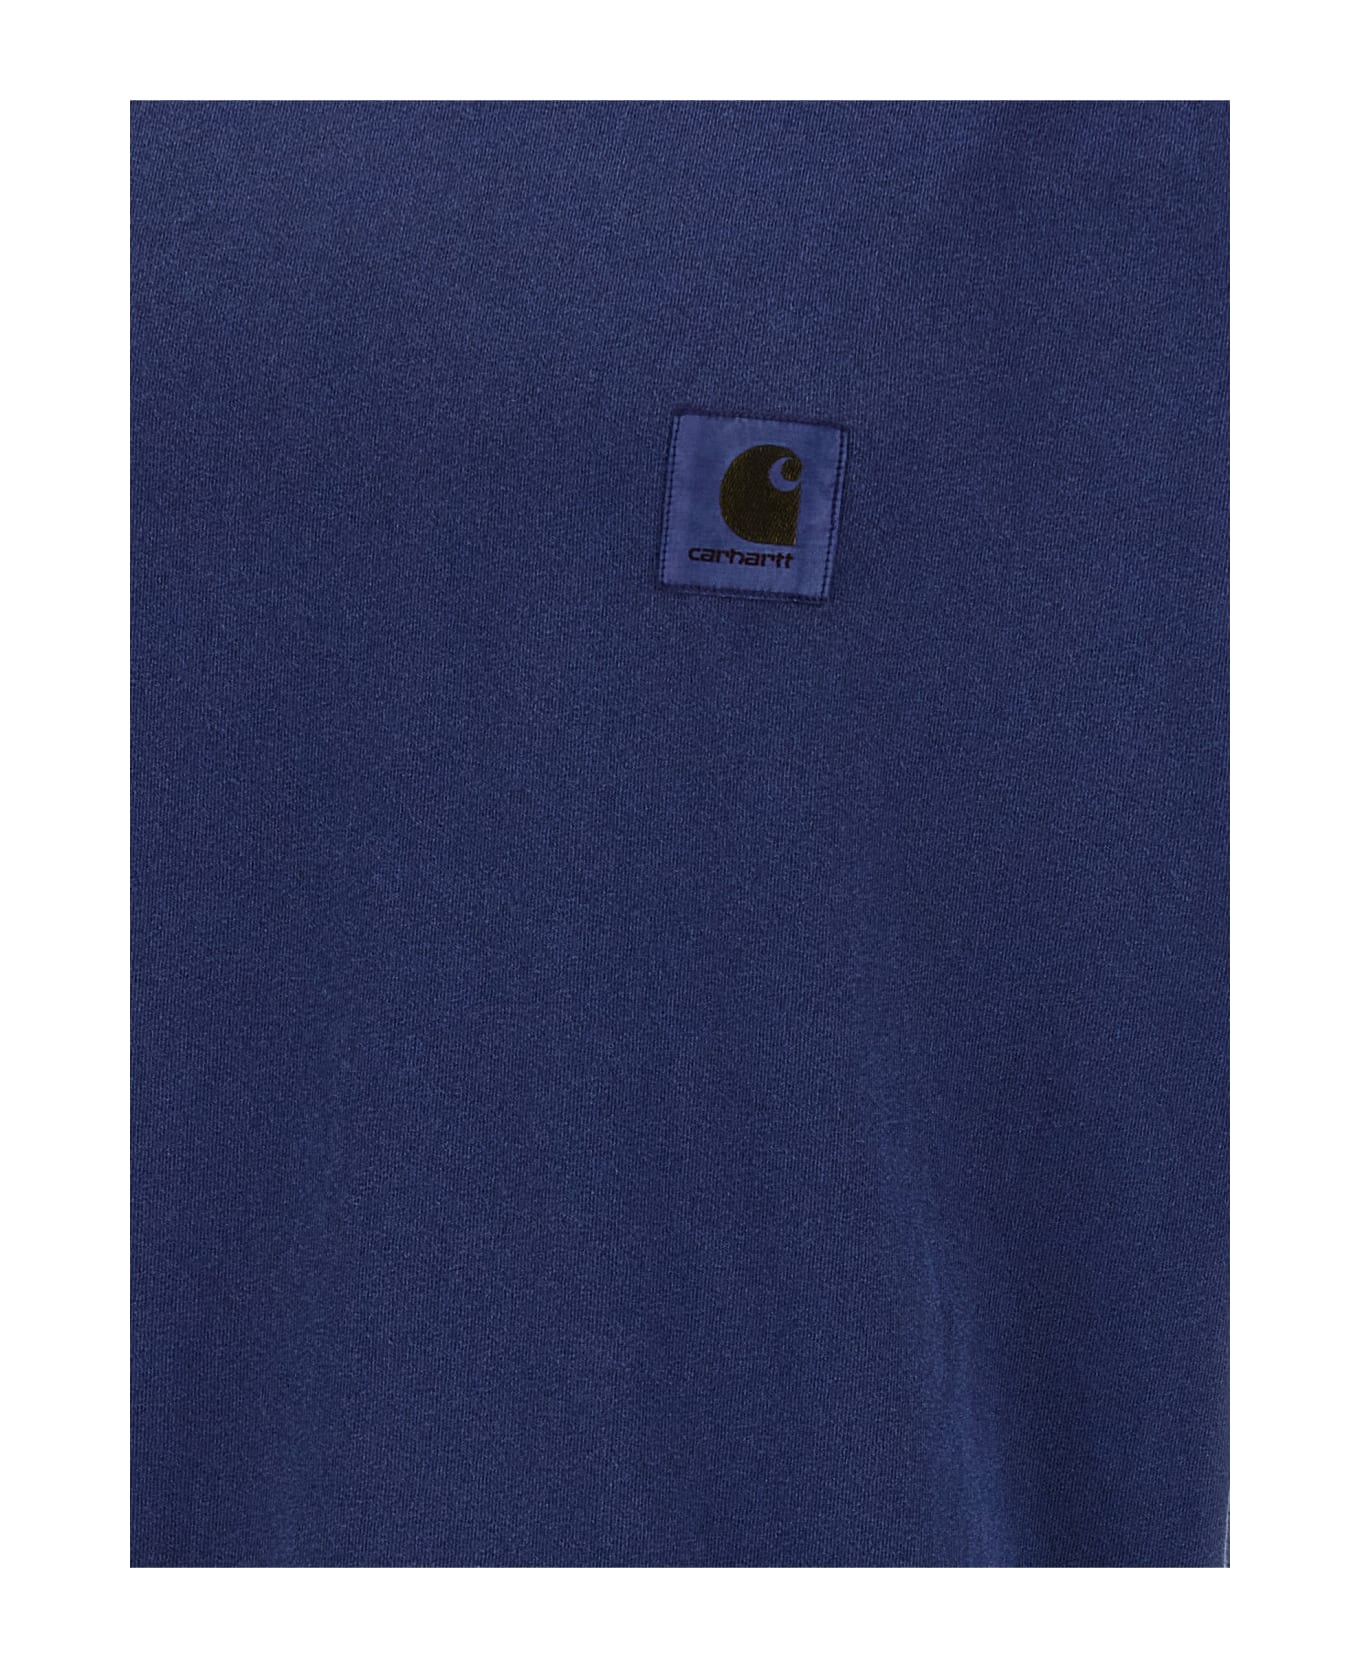 Carhartt 'nelson' T-shirt - Blue